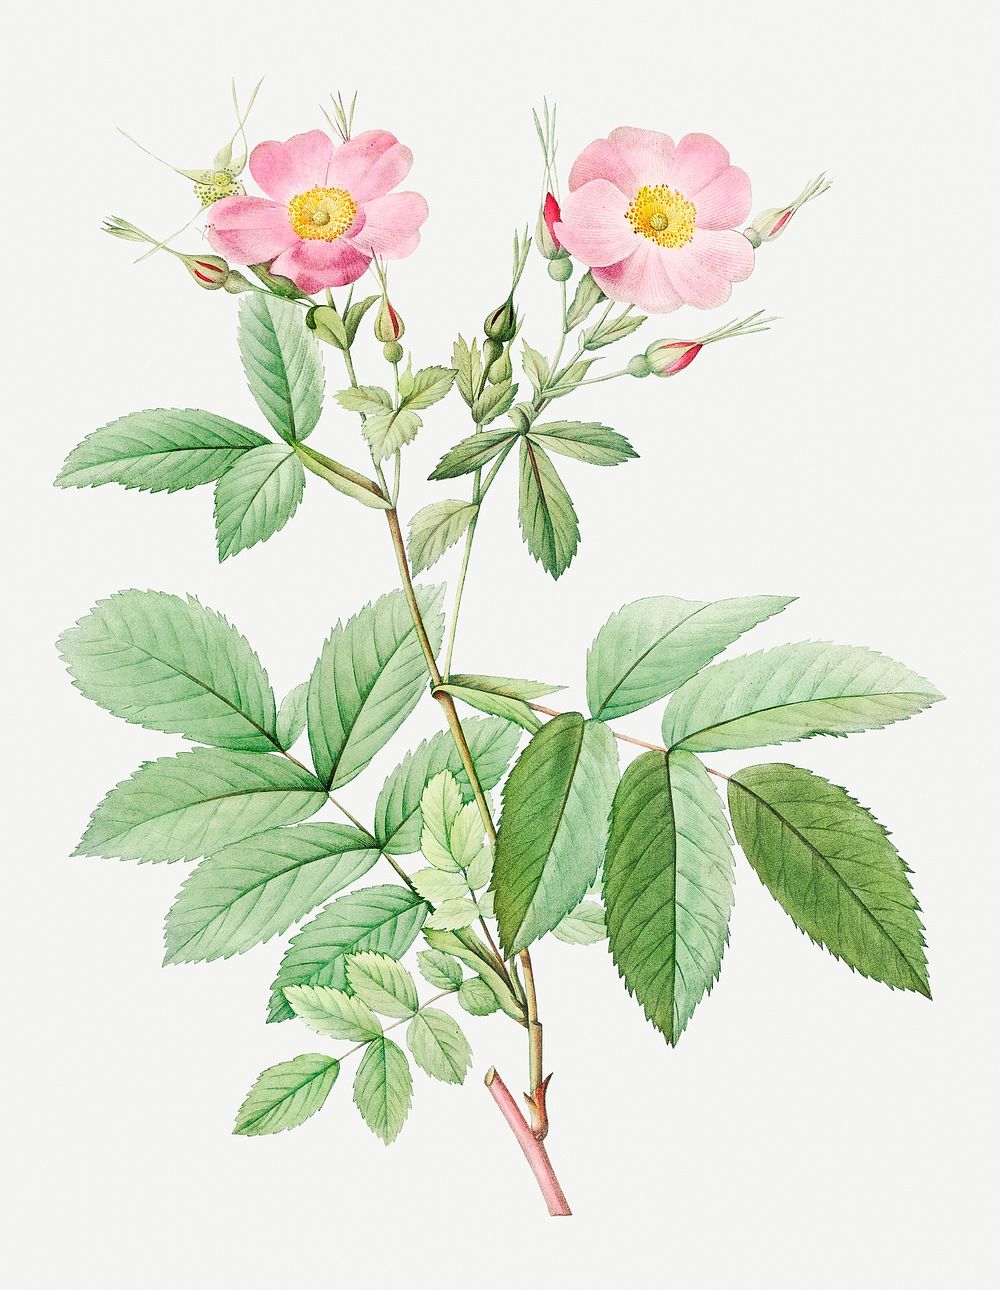 Vintage blooming alpine rose illustration